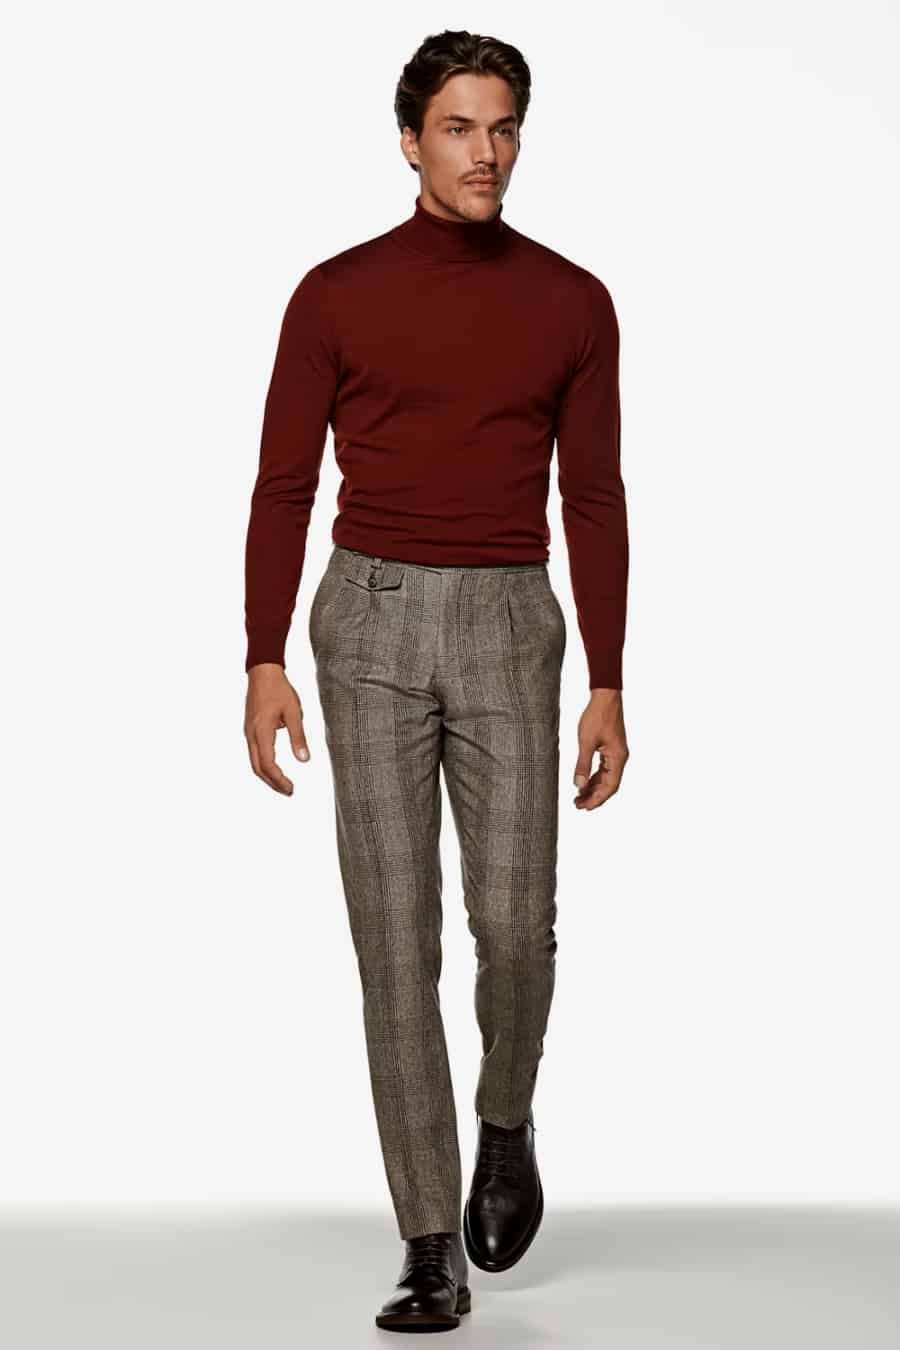 PLAID PANTS | Mens plaid pants, Pants outfit men, Mens clothing styles-hanic.com.vn